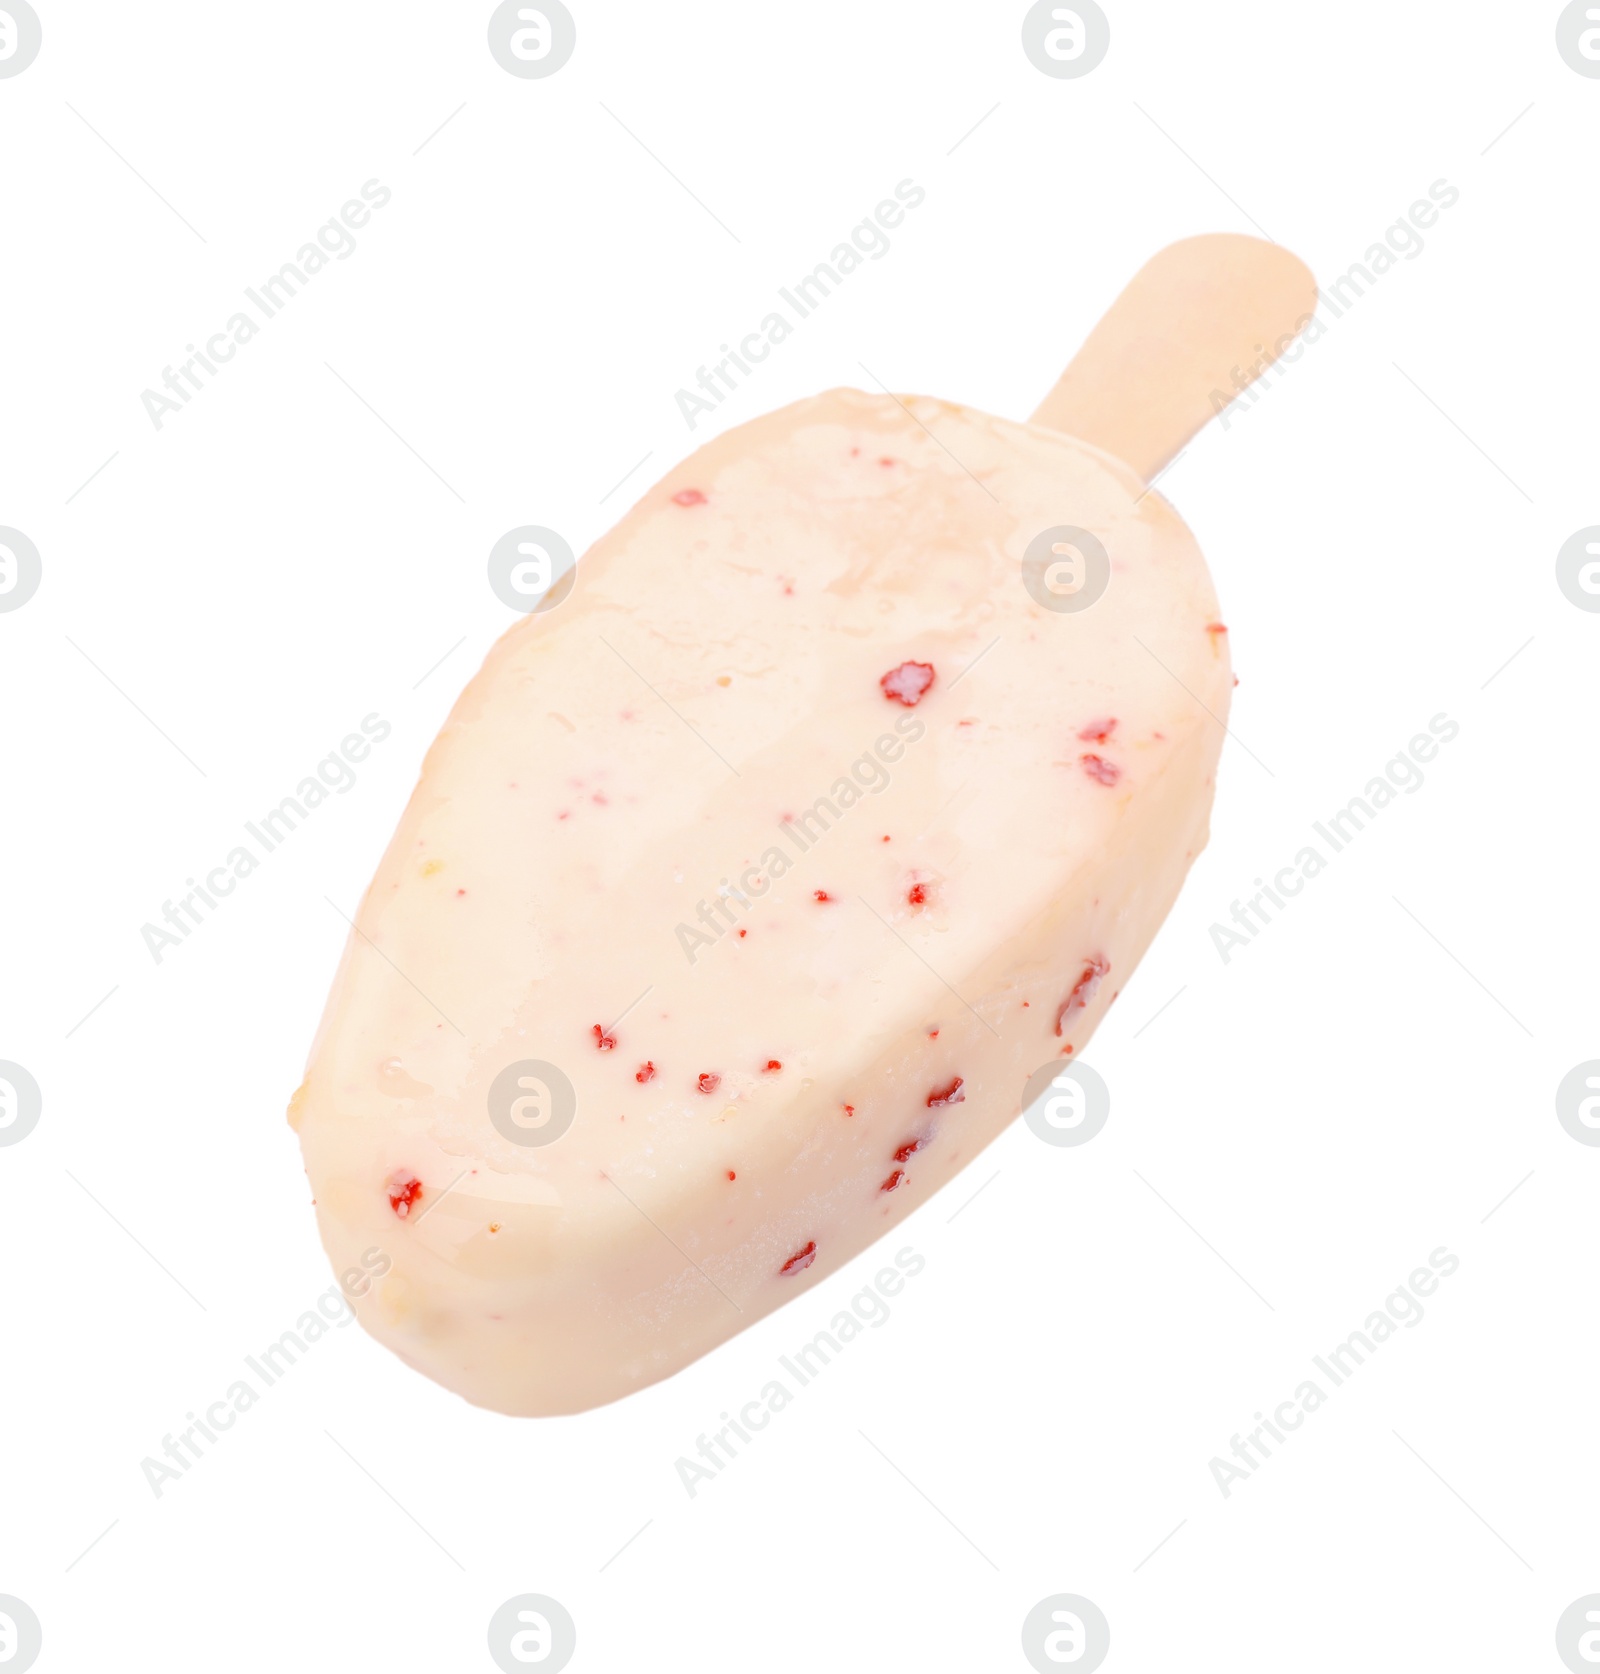 Photo of Delicious glazed ice cream bar isolated on white